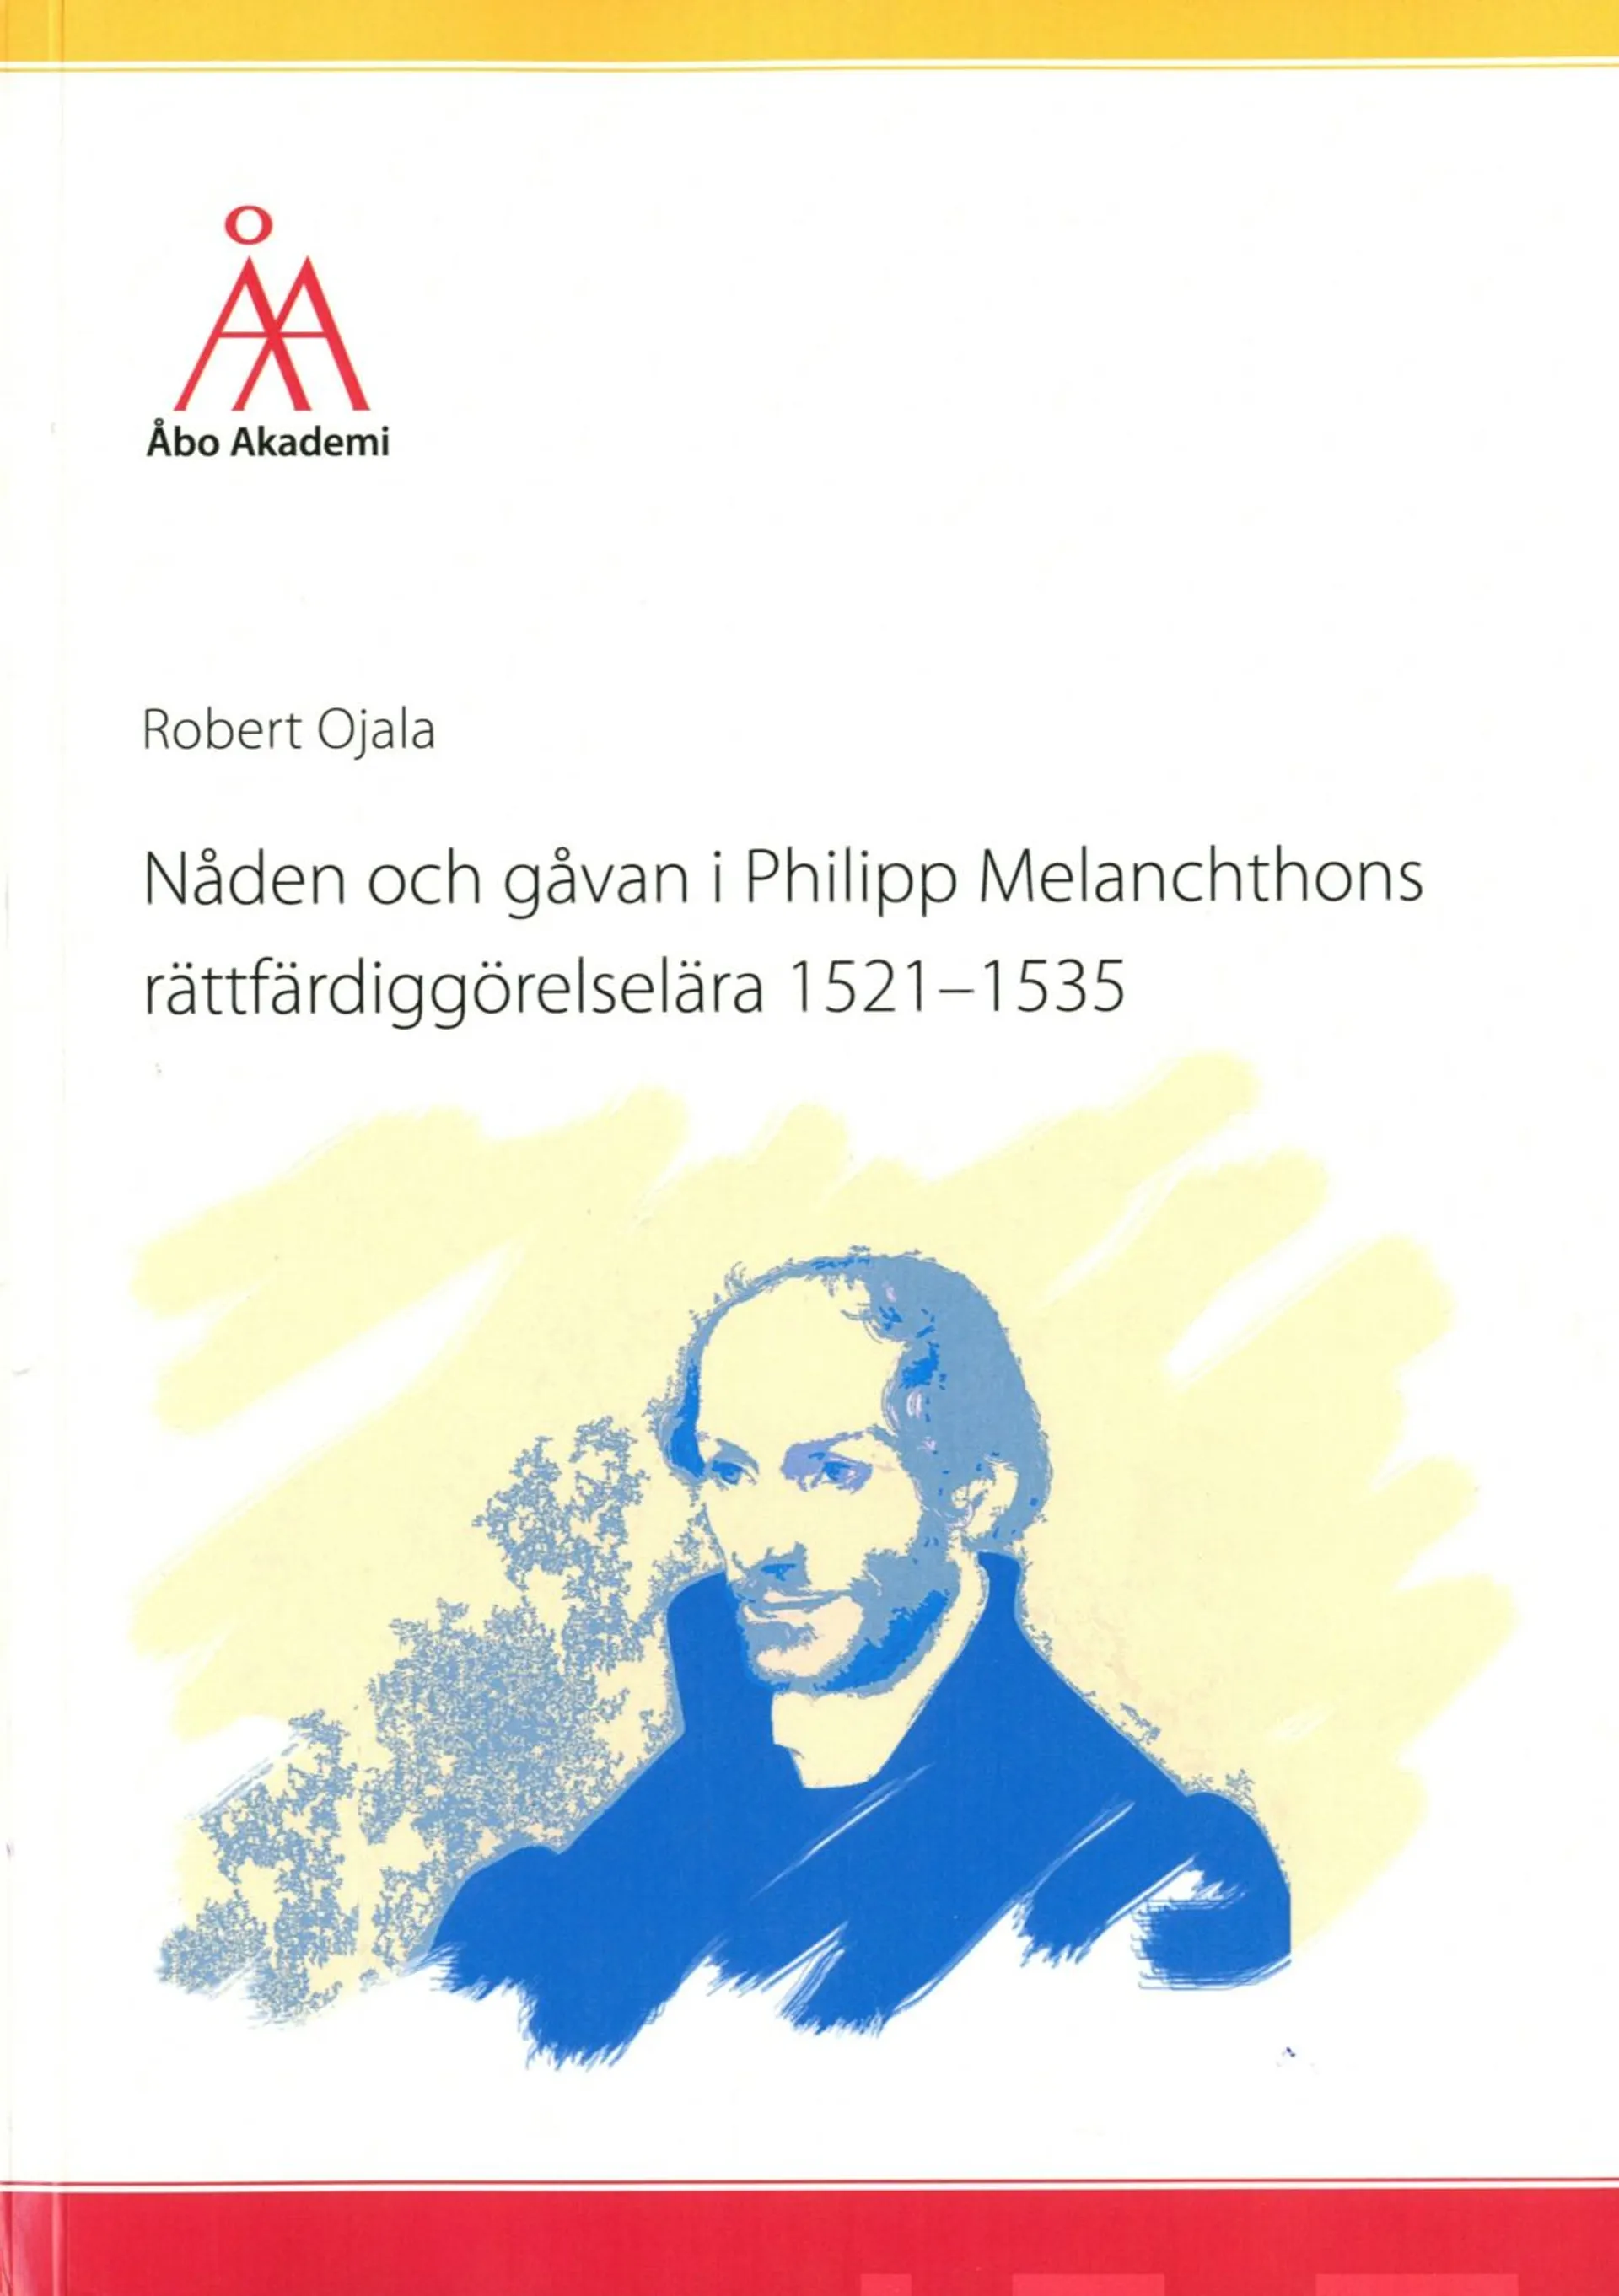 Ojala, Nåden och gåvan i Philipp Melanchthons rättfärdiggörelselära 1521-1535